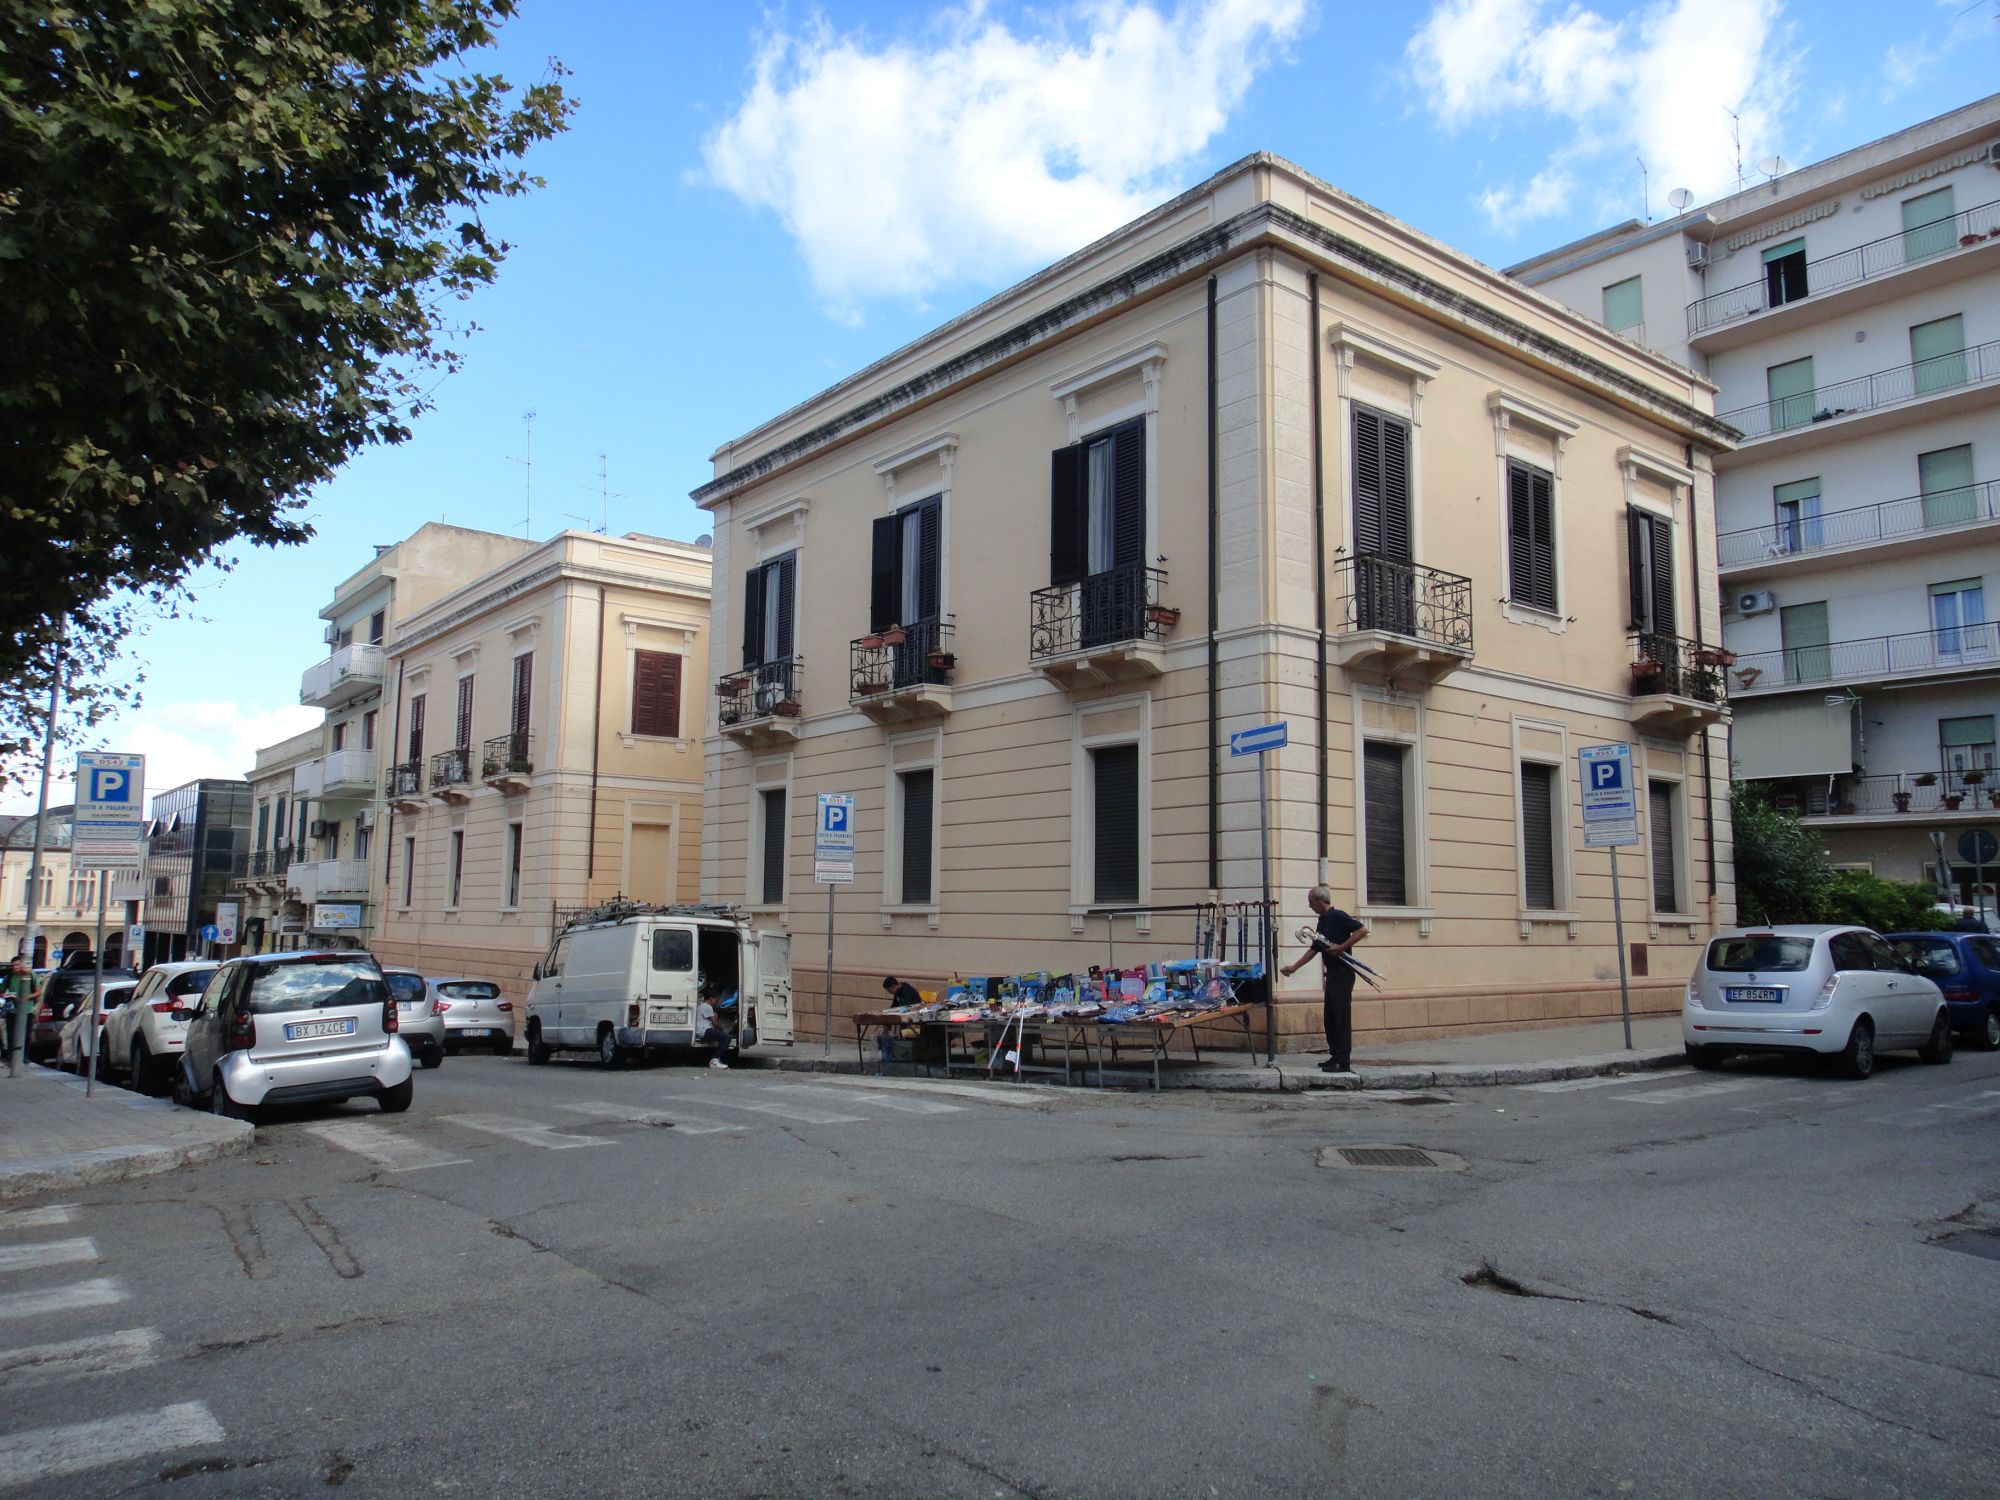 Case per impiegati (casa, popolare) - Reggio di Calabria (RC) 